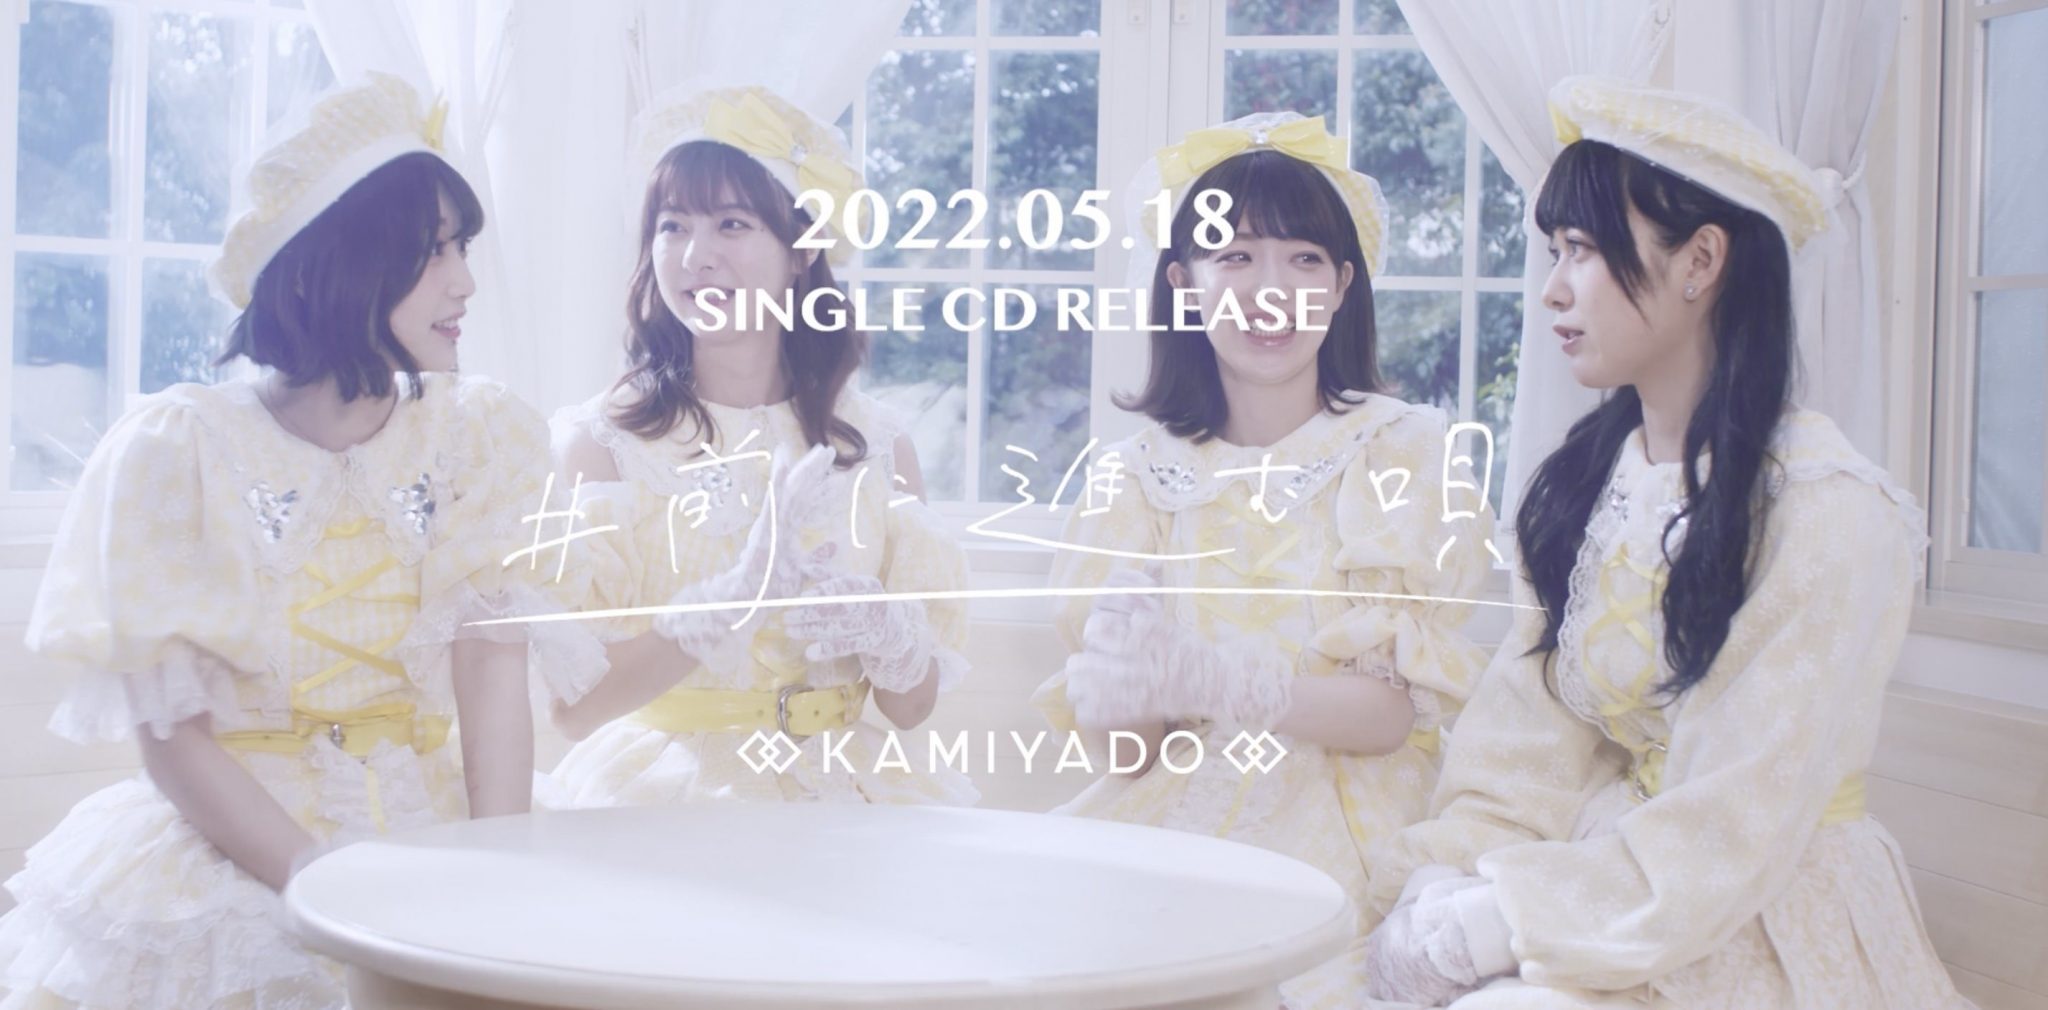 神宿四人体制全新单曲「#前に进む呗」五月发行预告在YouTube公开 - itotii